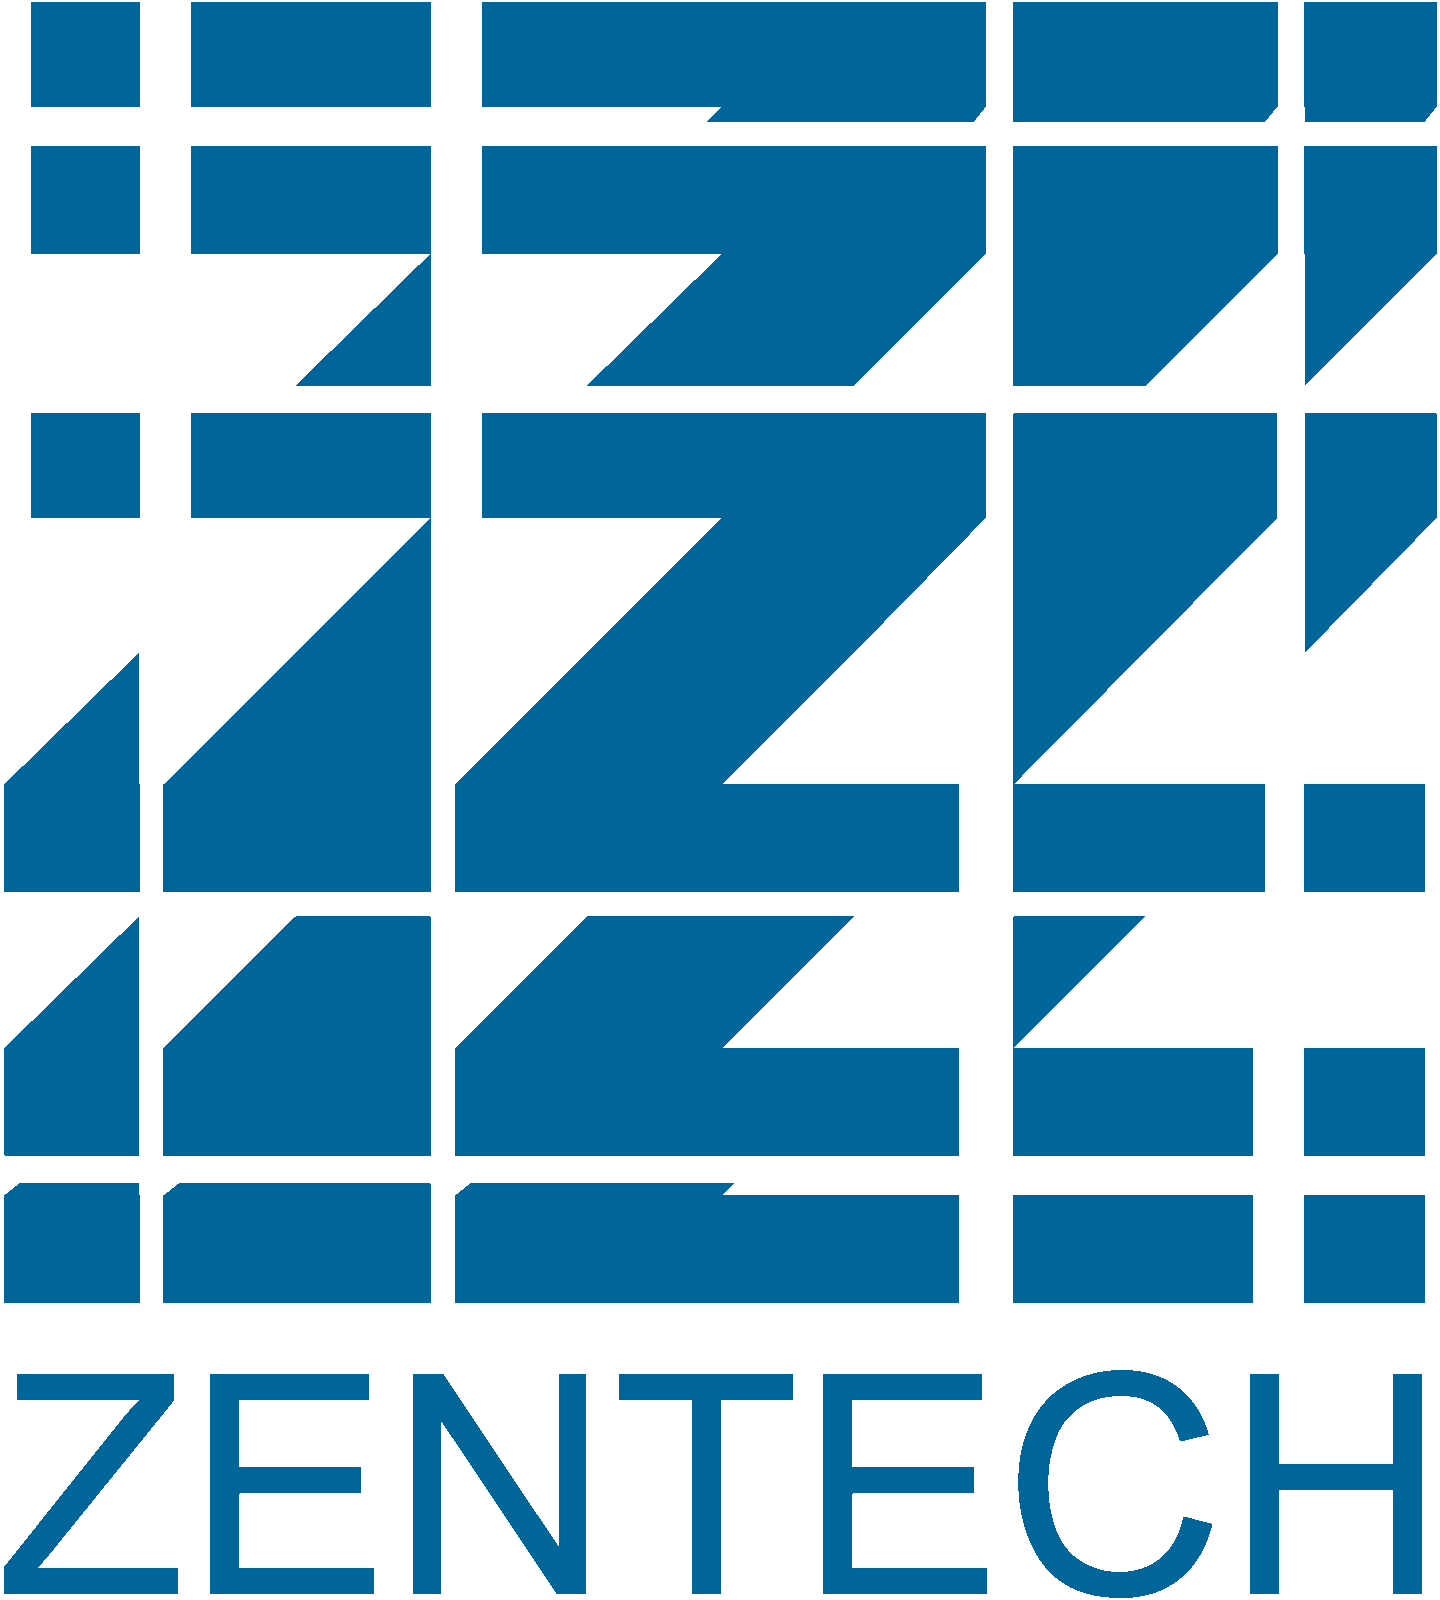 Zentech logo blue